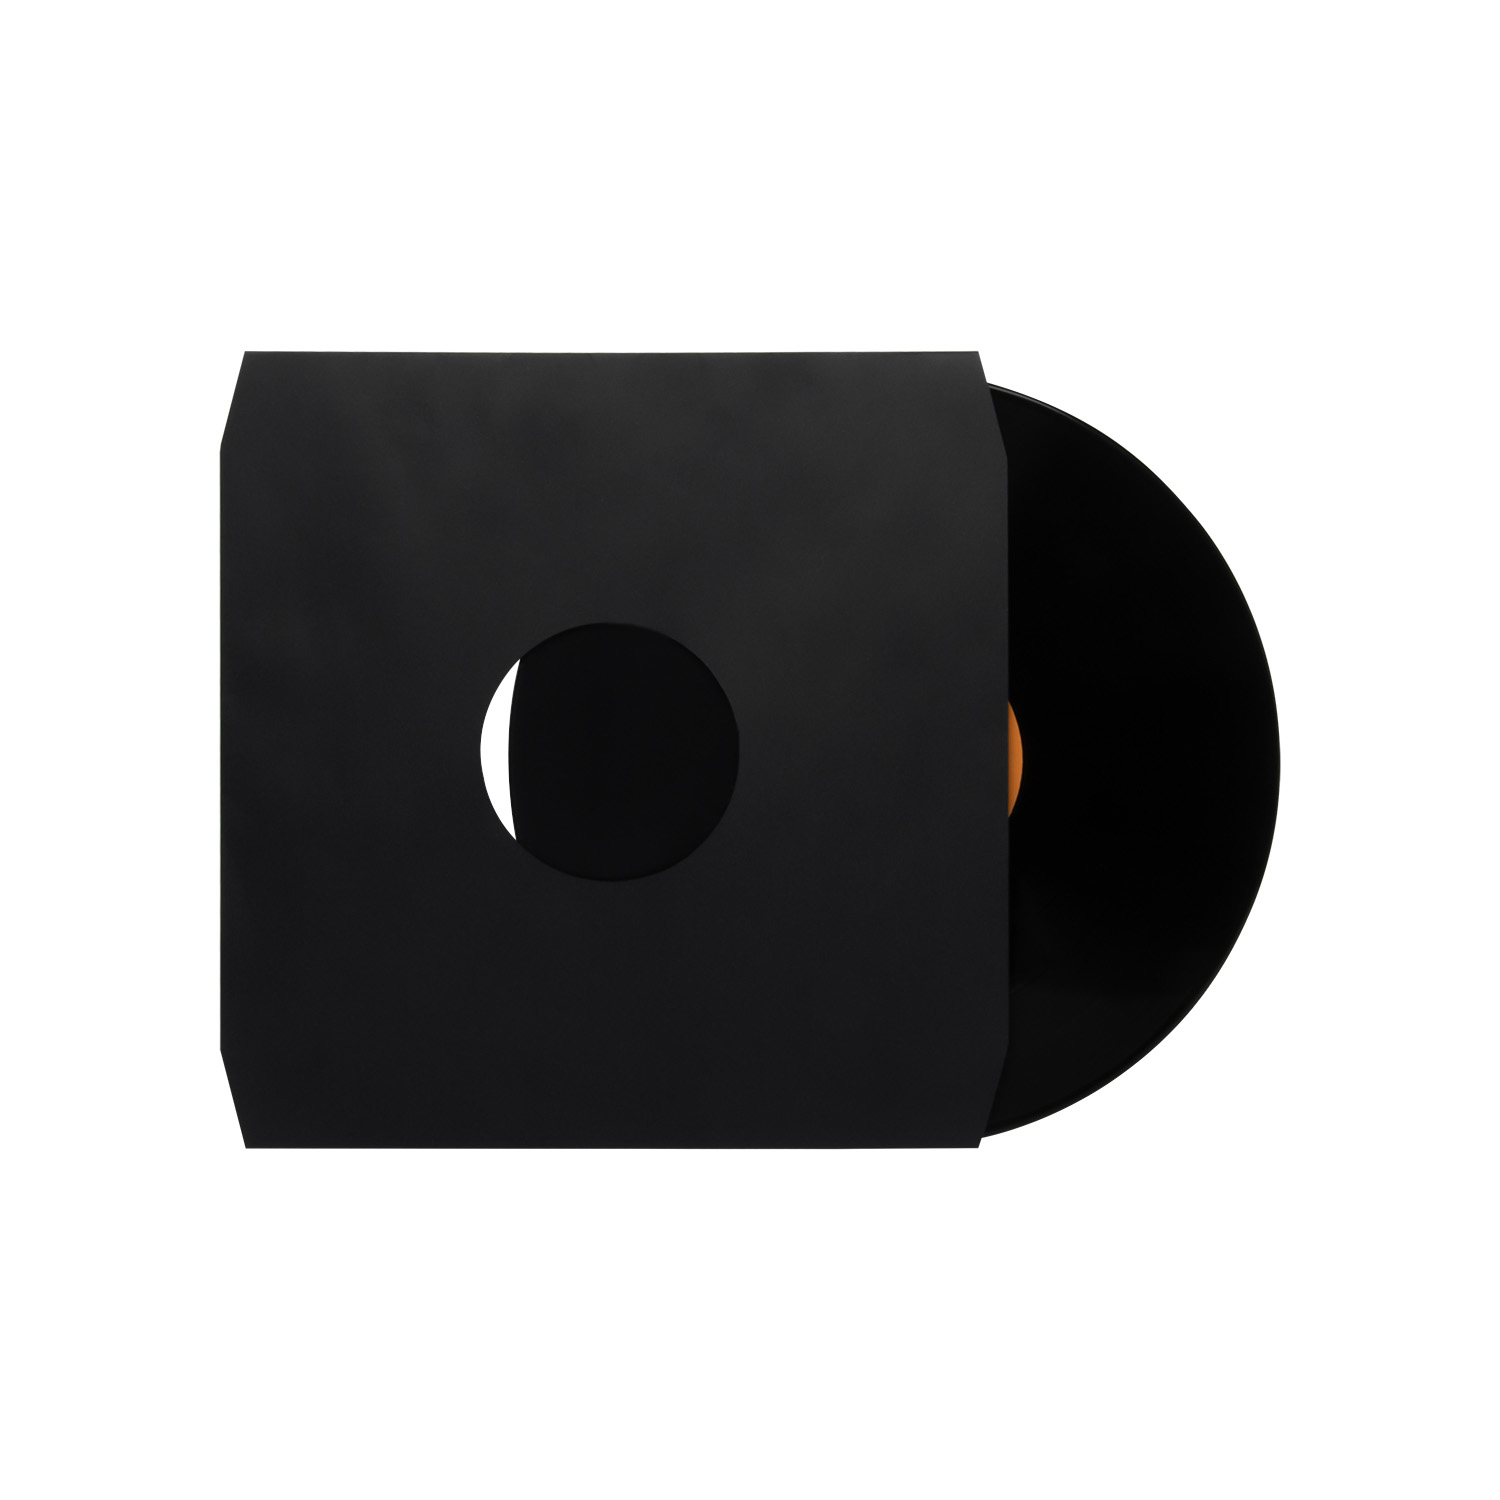 Vinylové vnitřní obaly na desky - těžký papír bez kyselin s řezanými rohy pro ukládání LP desek